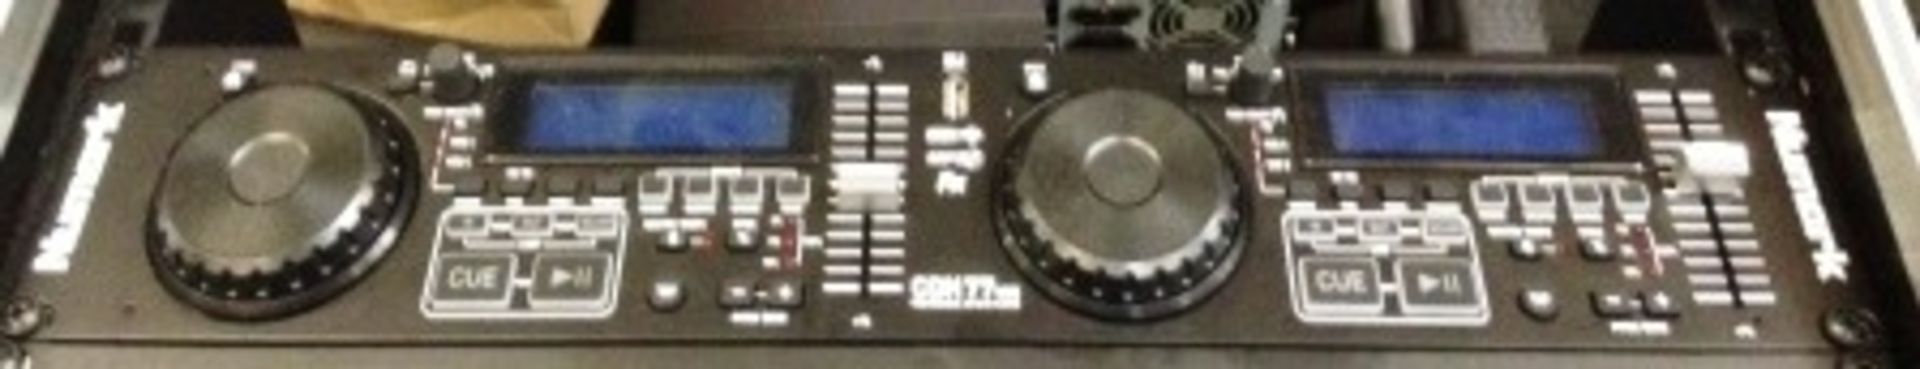 Numark dual USB and MP3 CD player mixer Model: DCN77